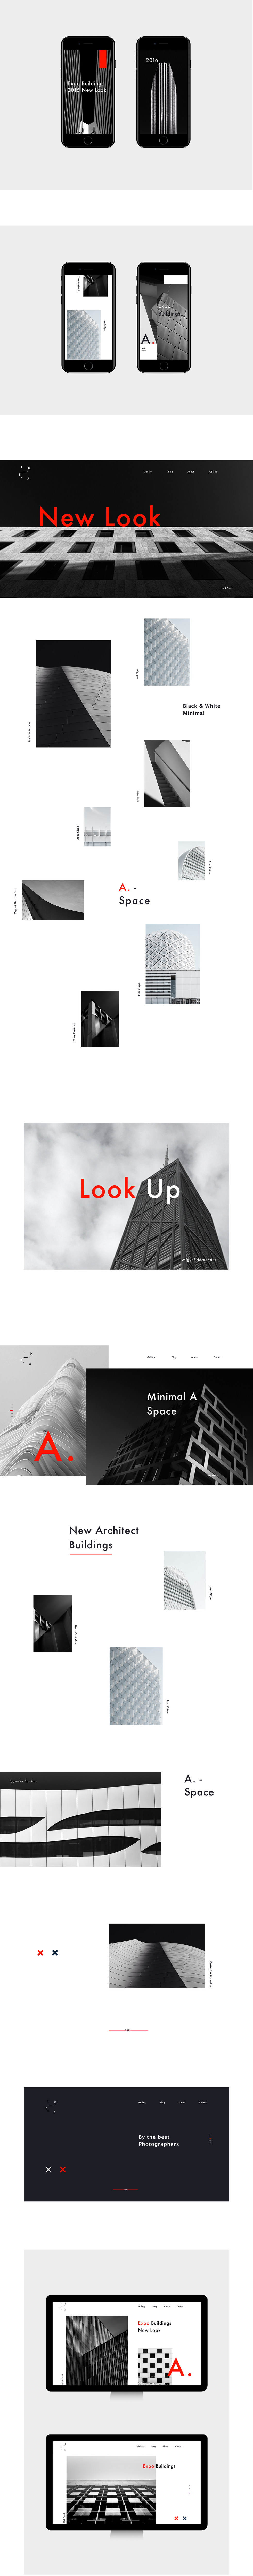 minimal Minimalism black$white Web UI UI/UX case photographers architects